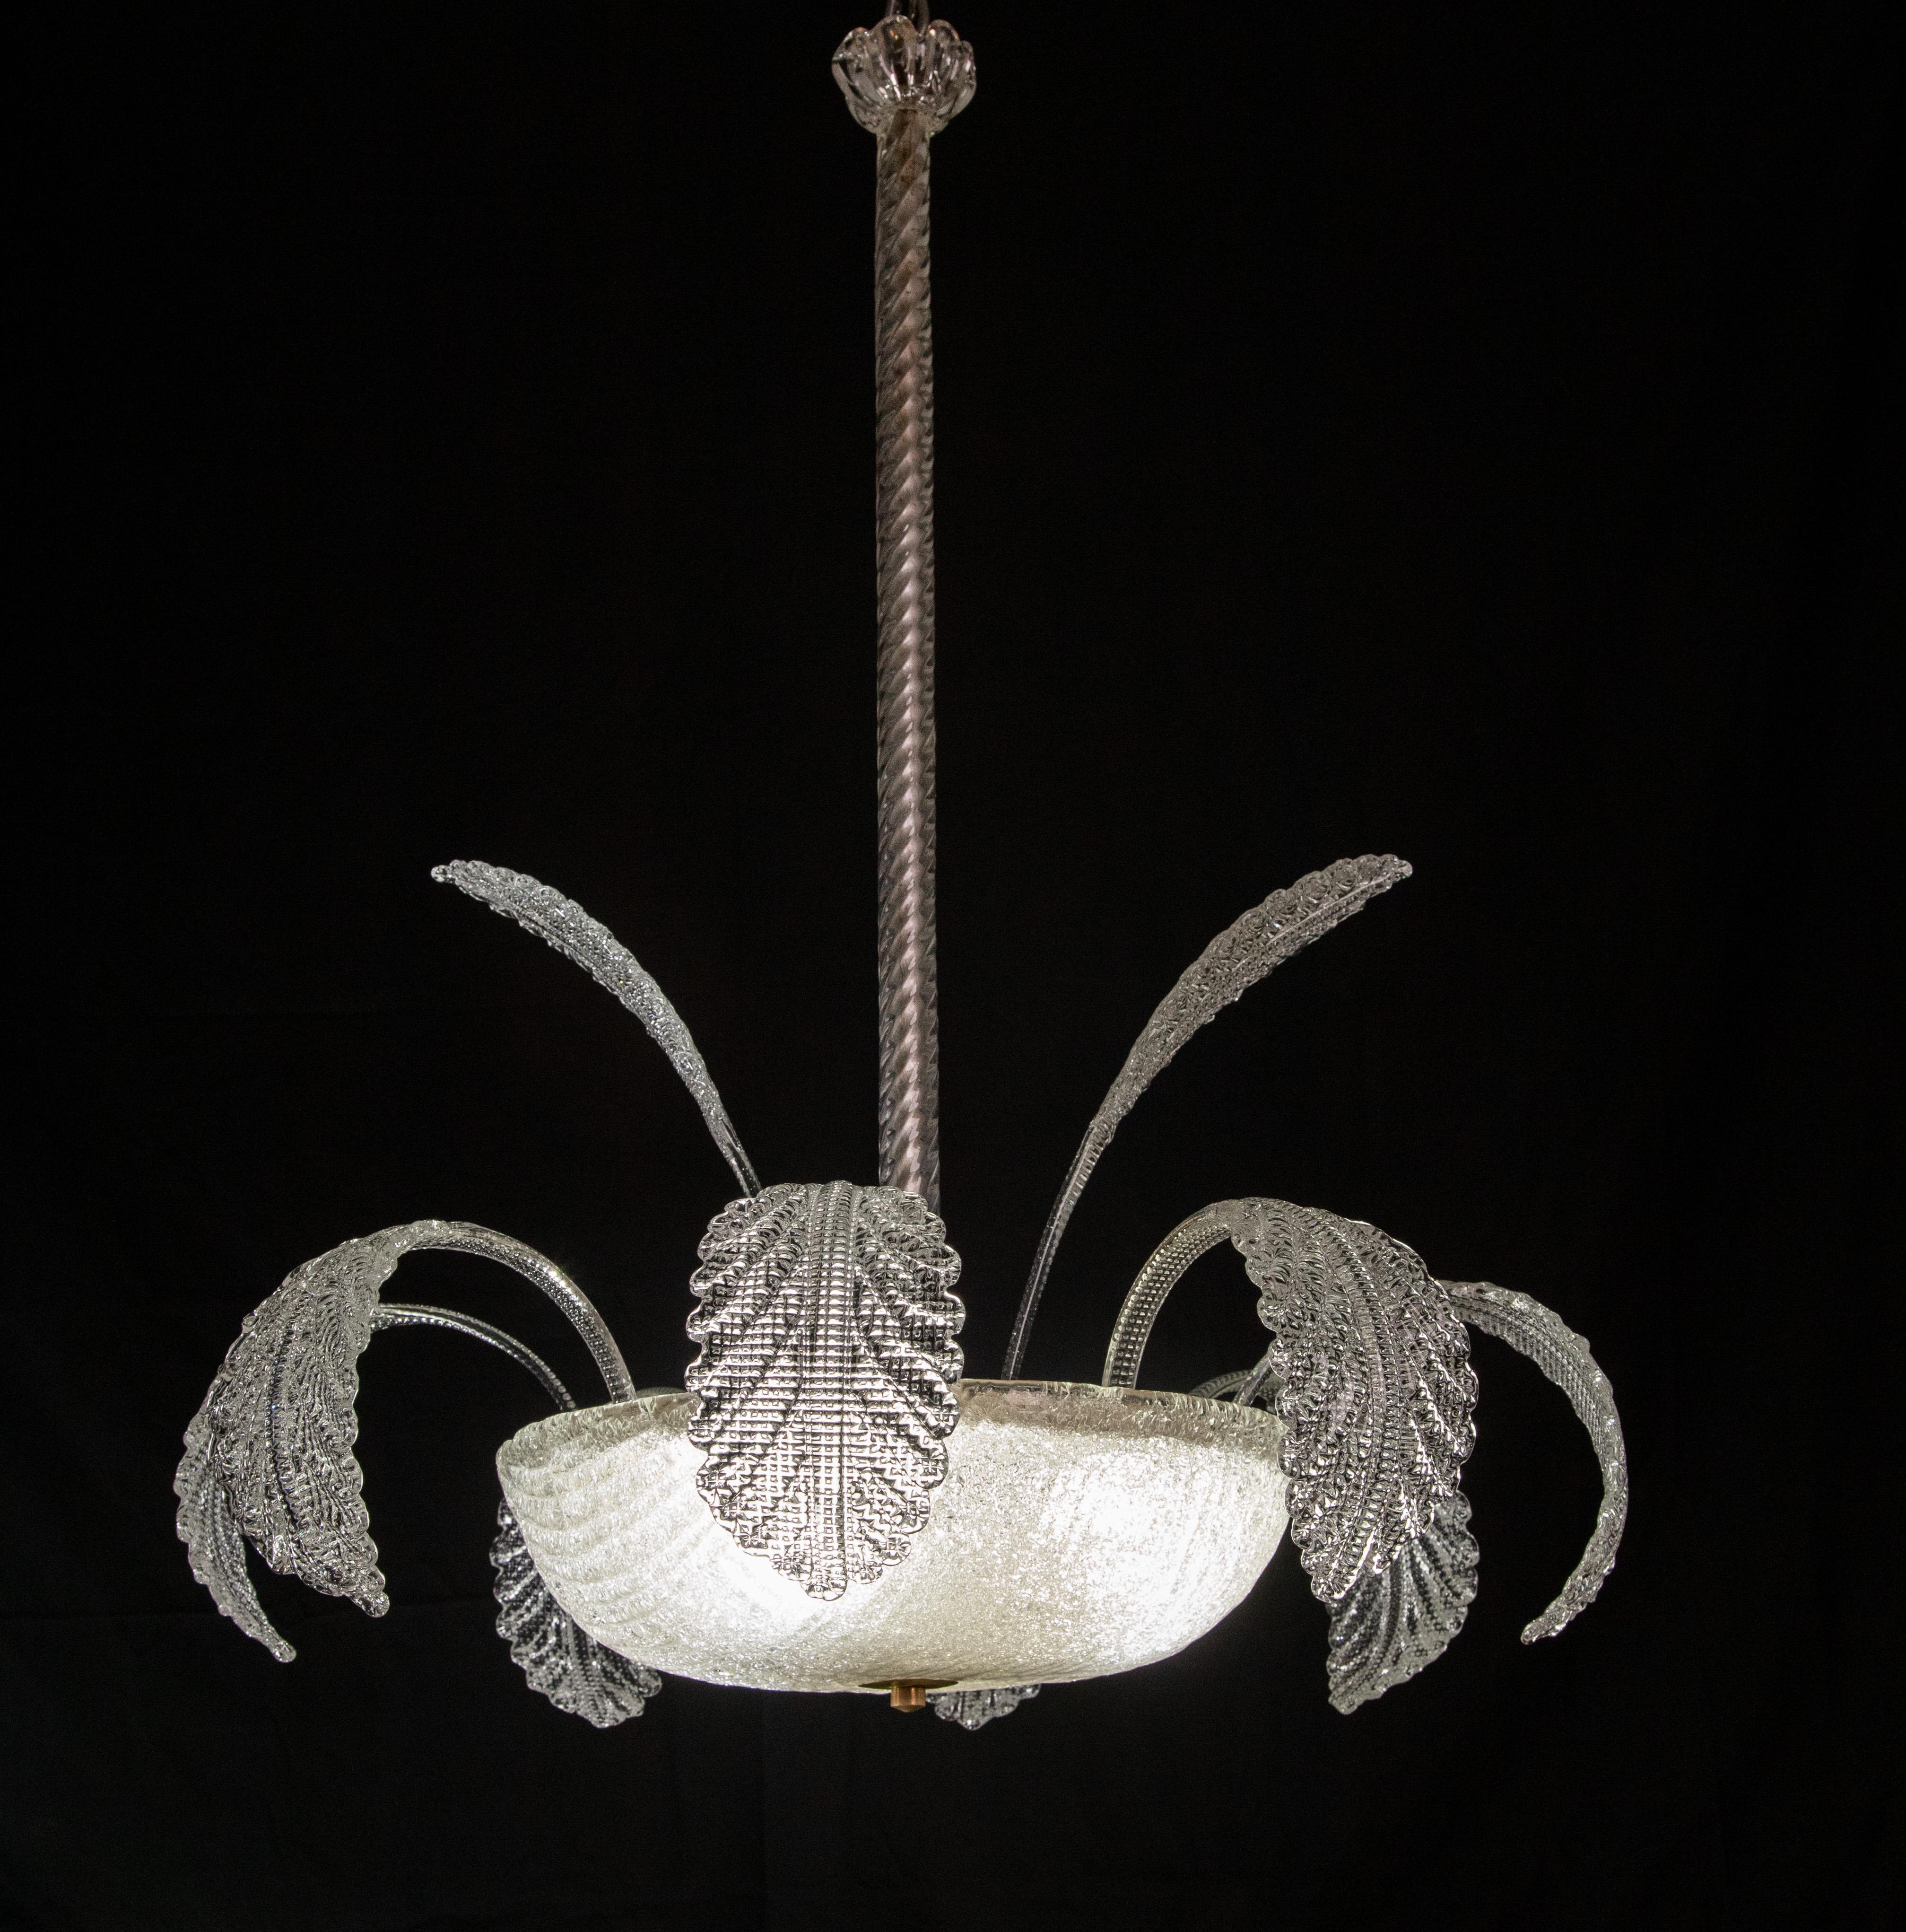 Echter Murano-Glas-Kronleuchter. Handgefertigt in Murano von Barovier e Toso.
Zeitraum: 1950s
Condit: perfekter Zustand und voll funktionsfähig. 
3 e27-Glühbirnen.
